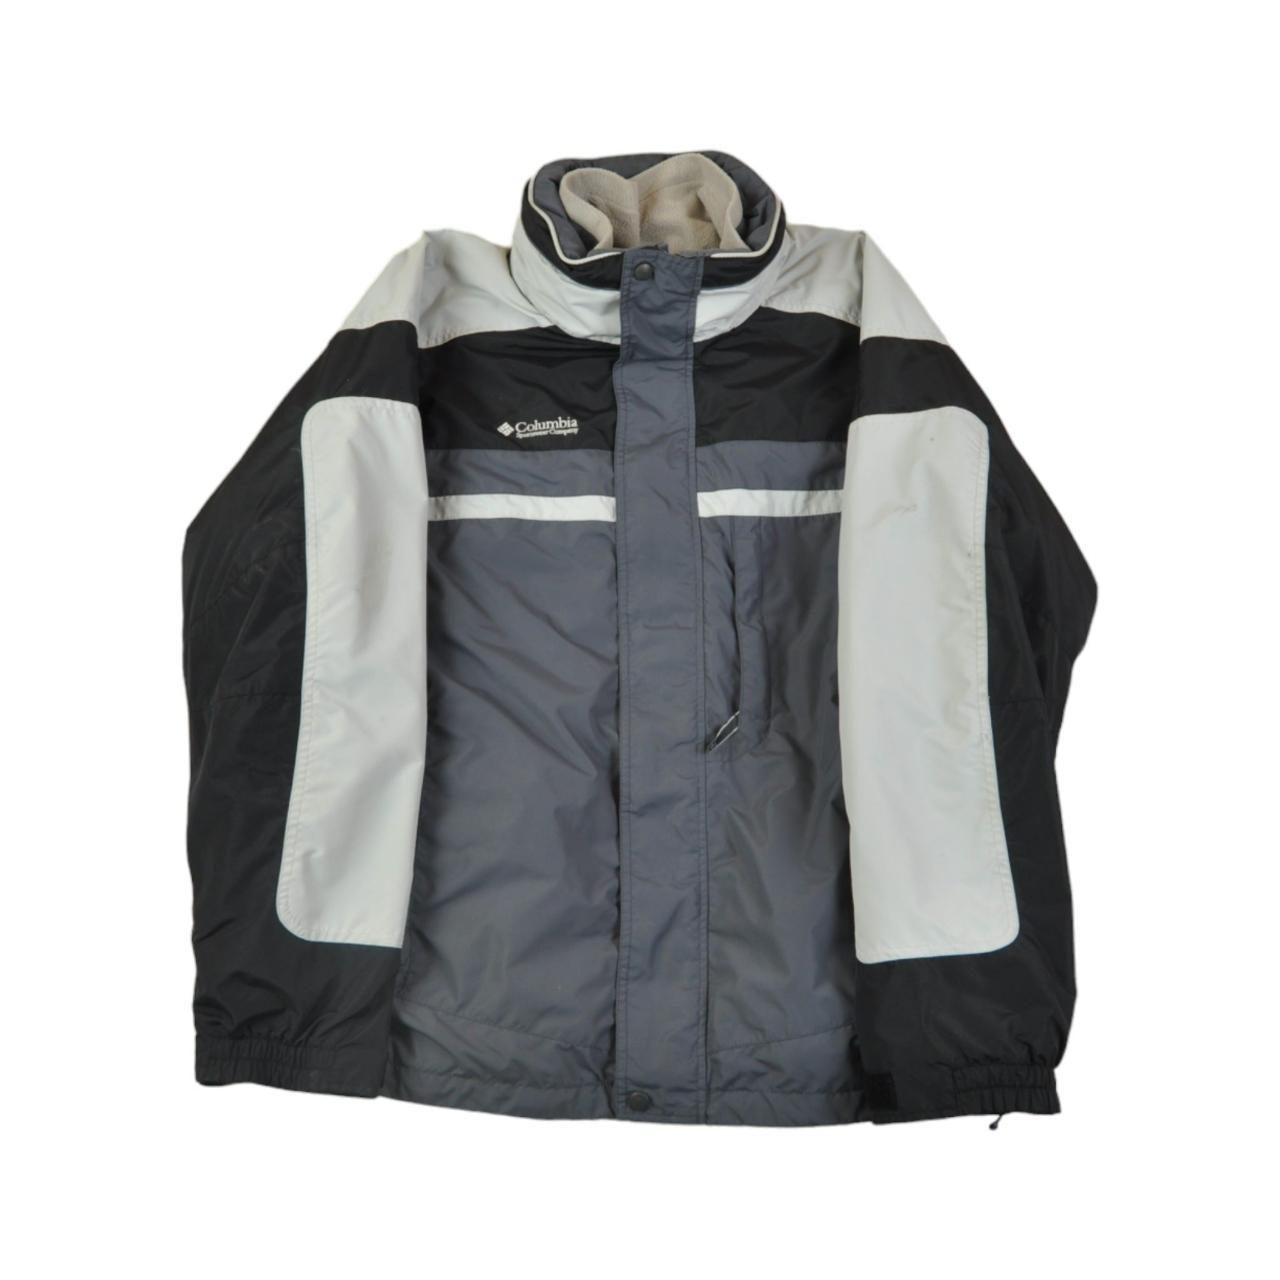 Vintage Columbia Jacket Waterproof Grey/Black Large.... - Depop